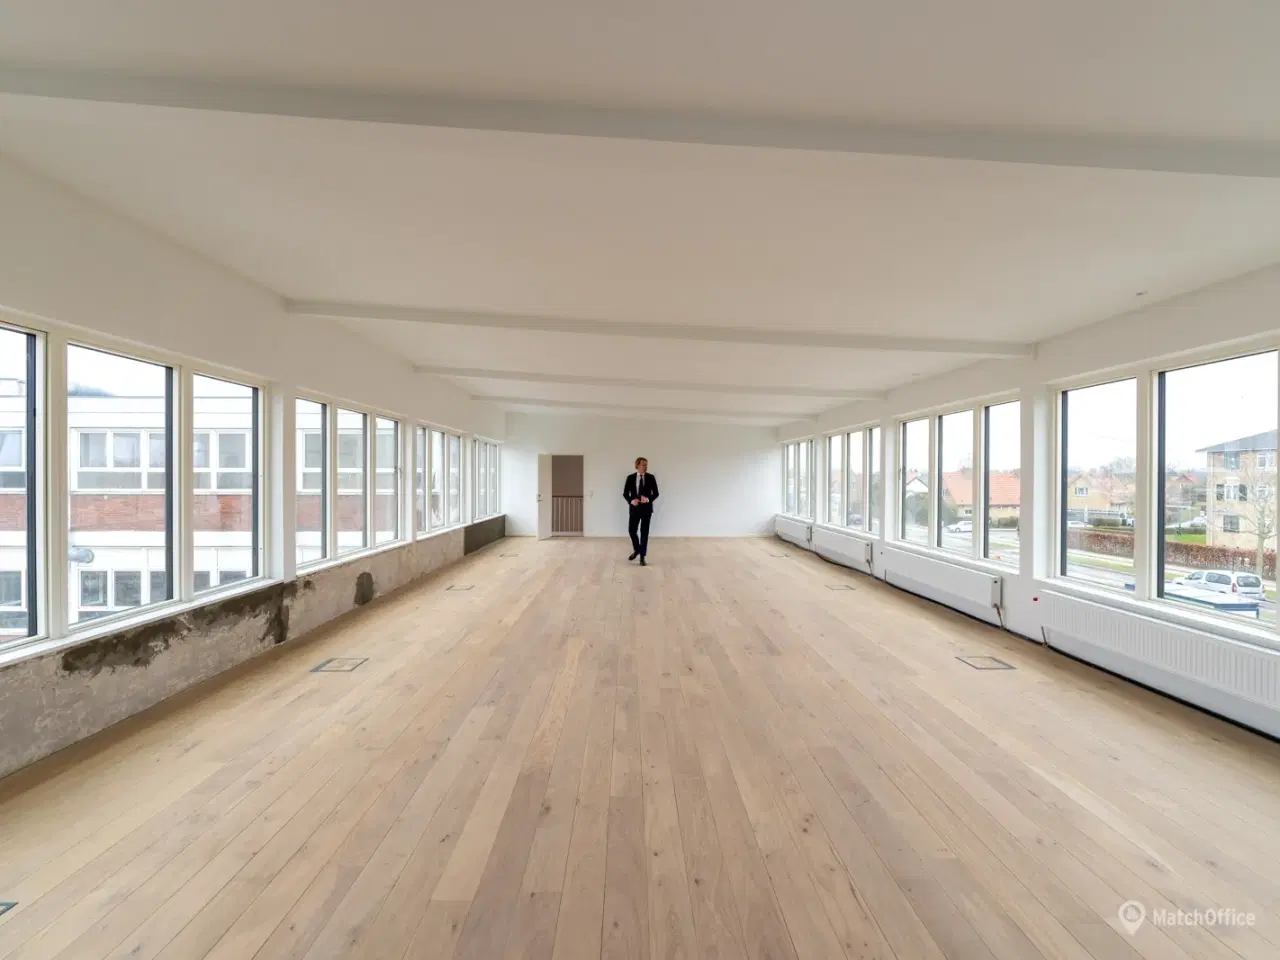 Billede 1 - Moderne. luksuriøst og lyst kontor med åben planløsning i Valby